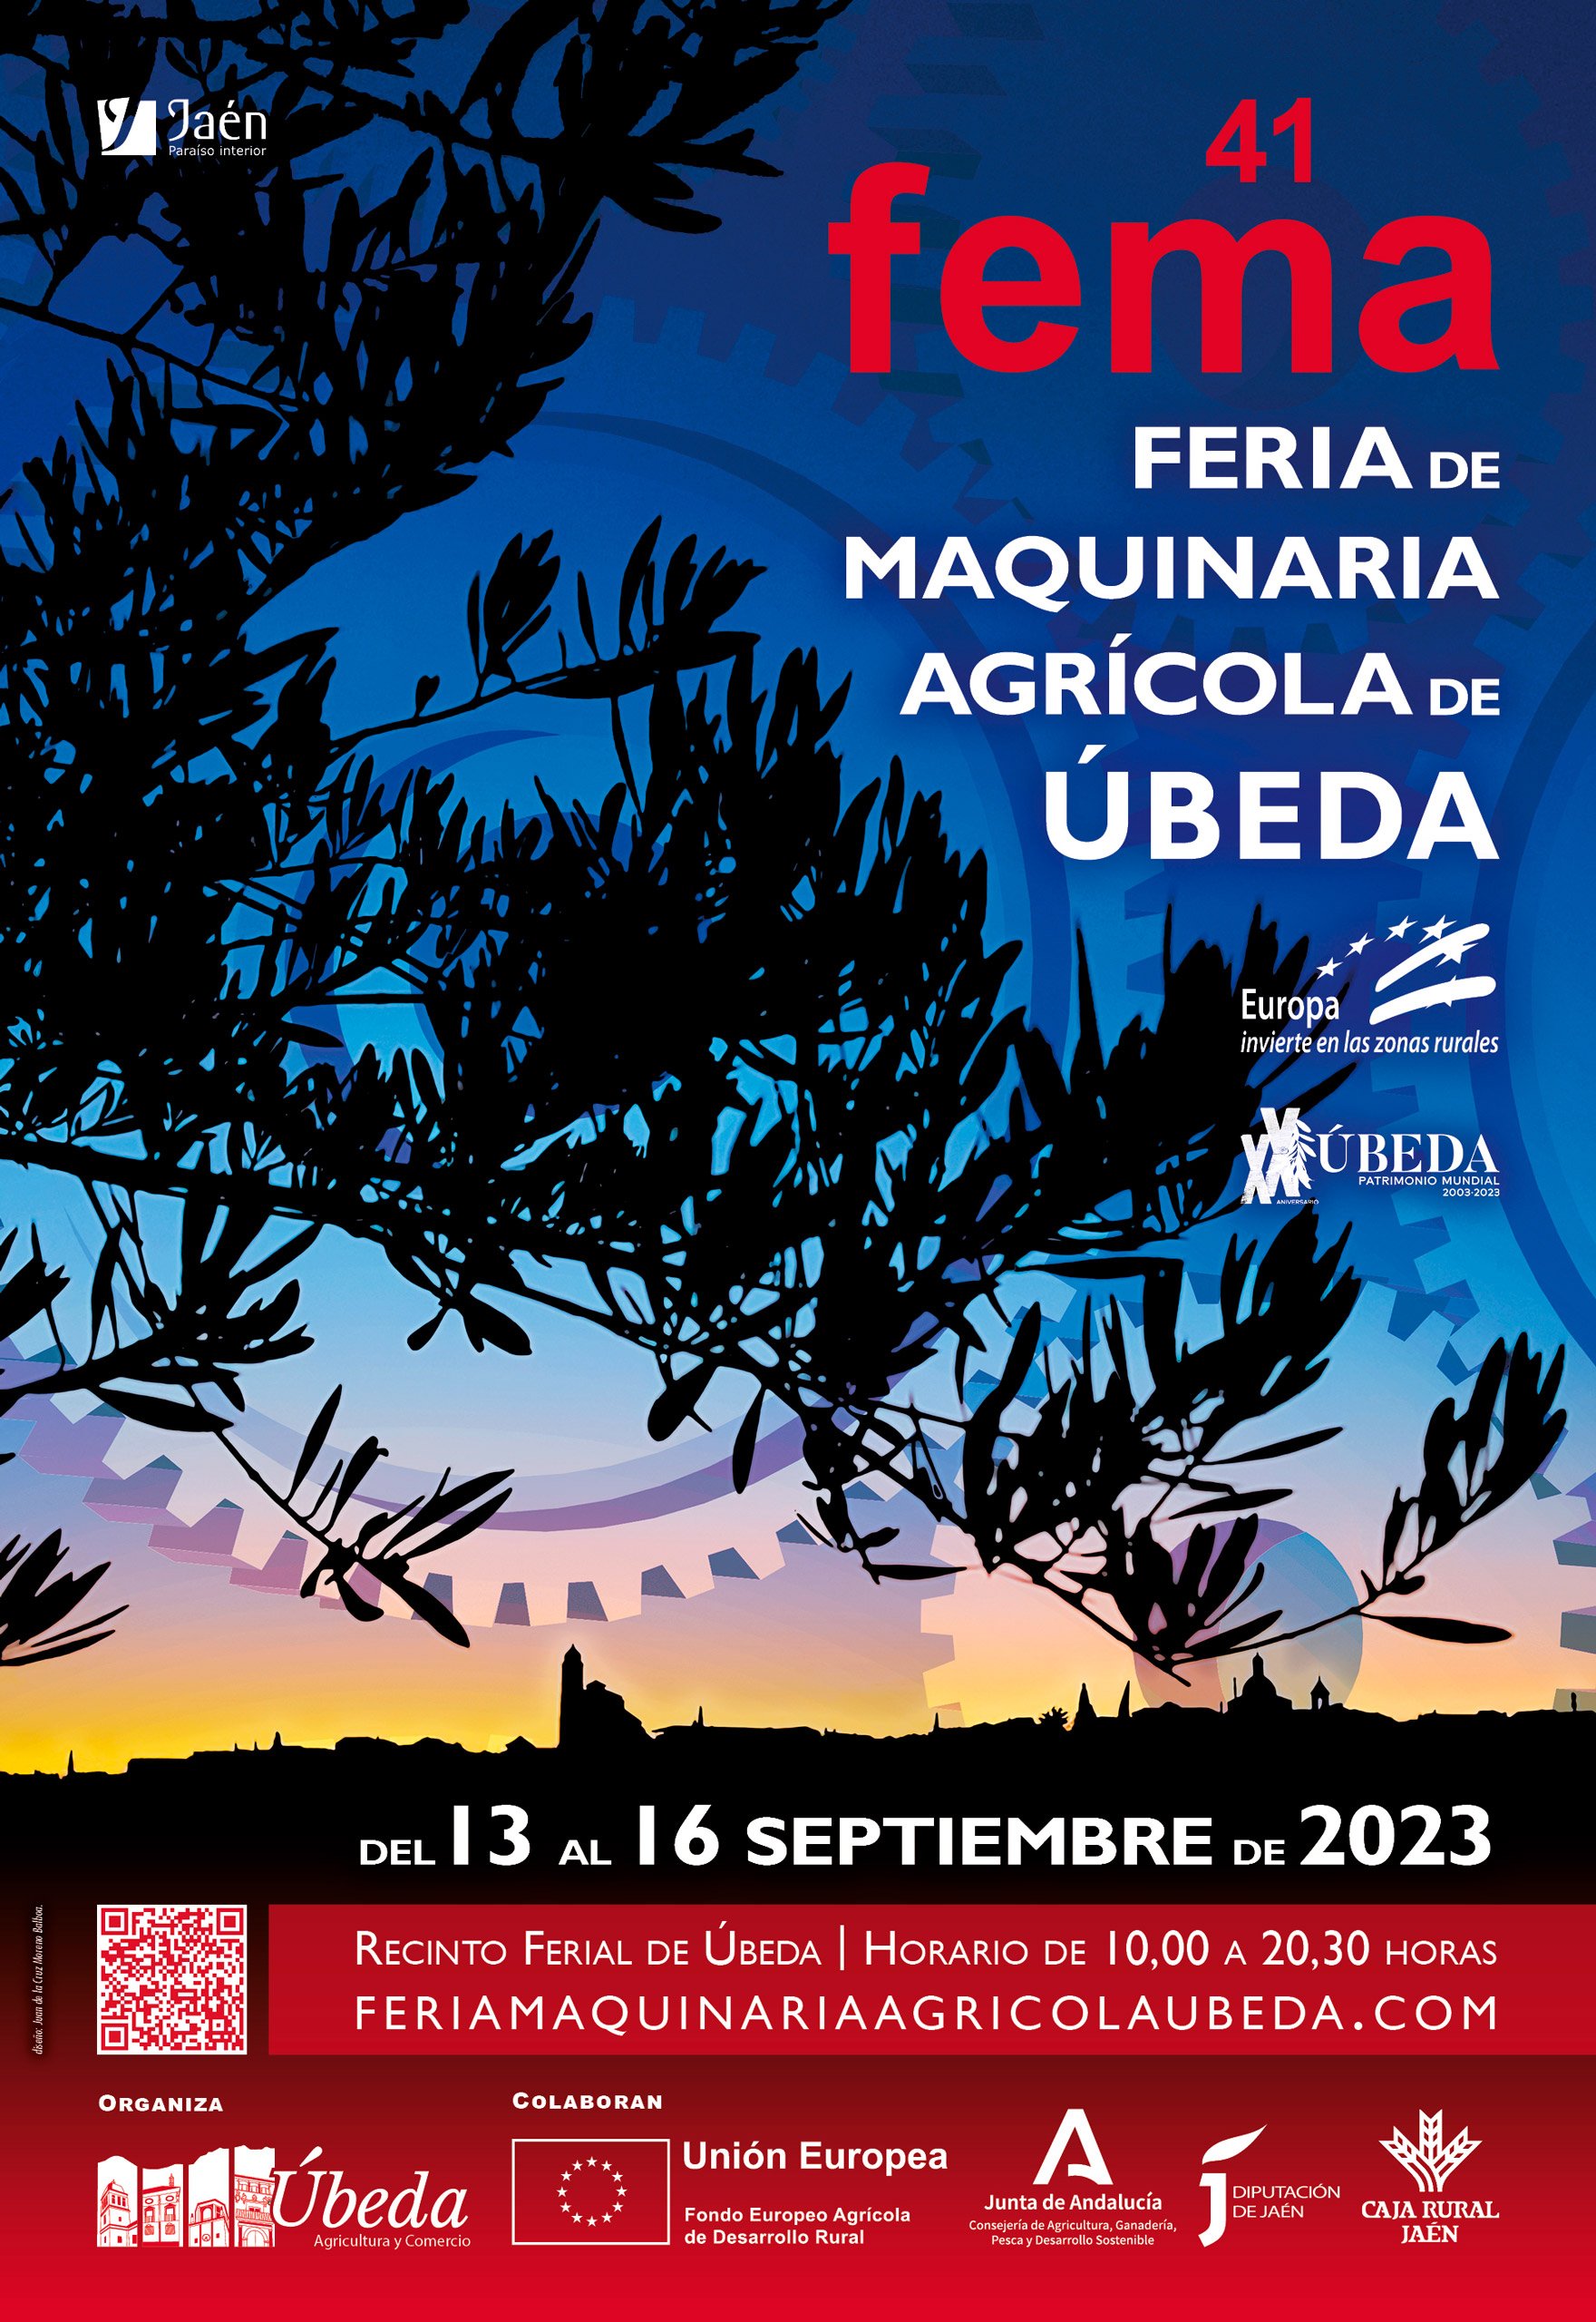 13-16 SEPTIEMBRE 2023  Feria de Maquinaria Agrícola de Úbeda